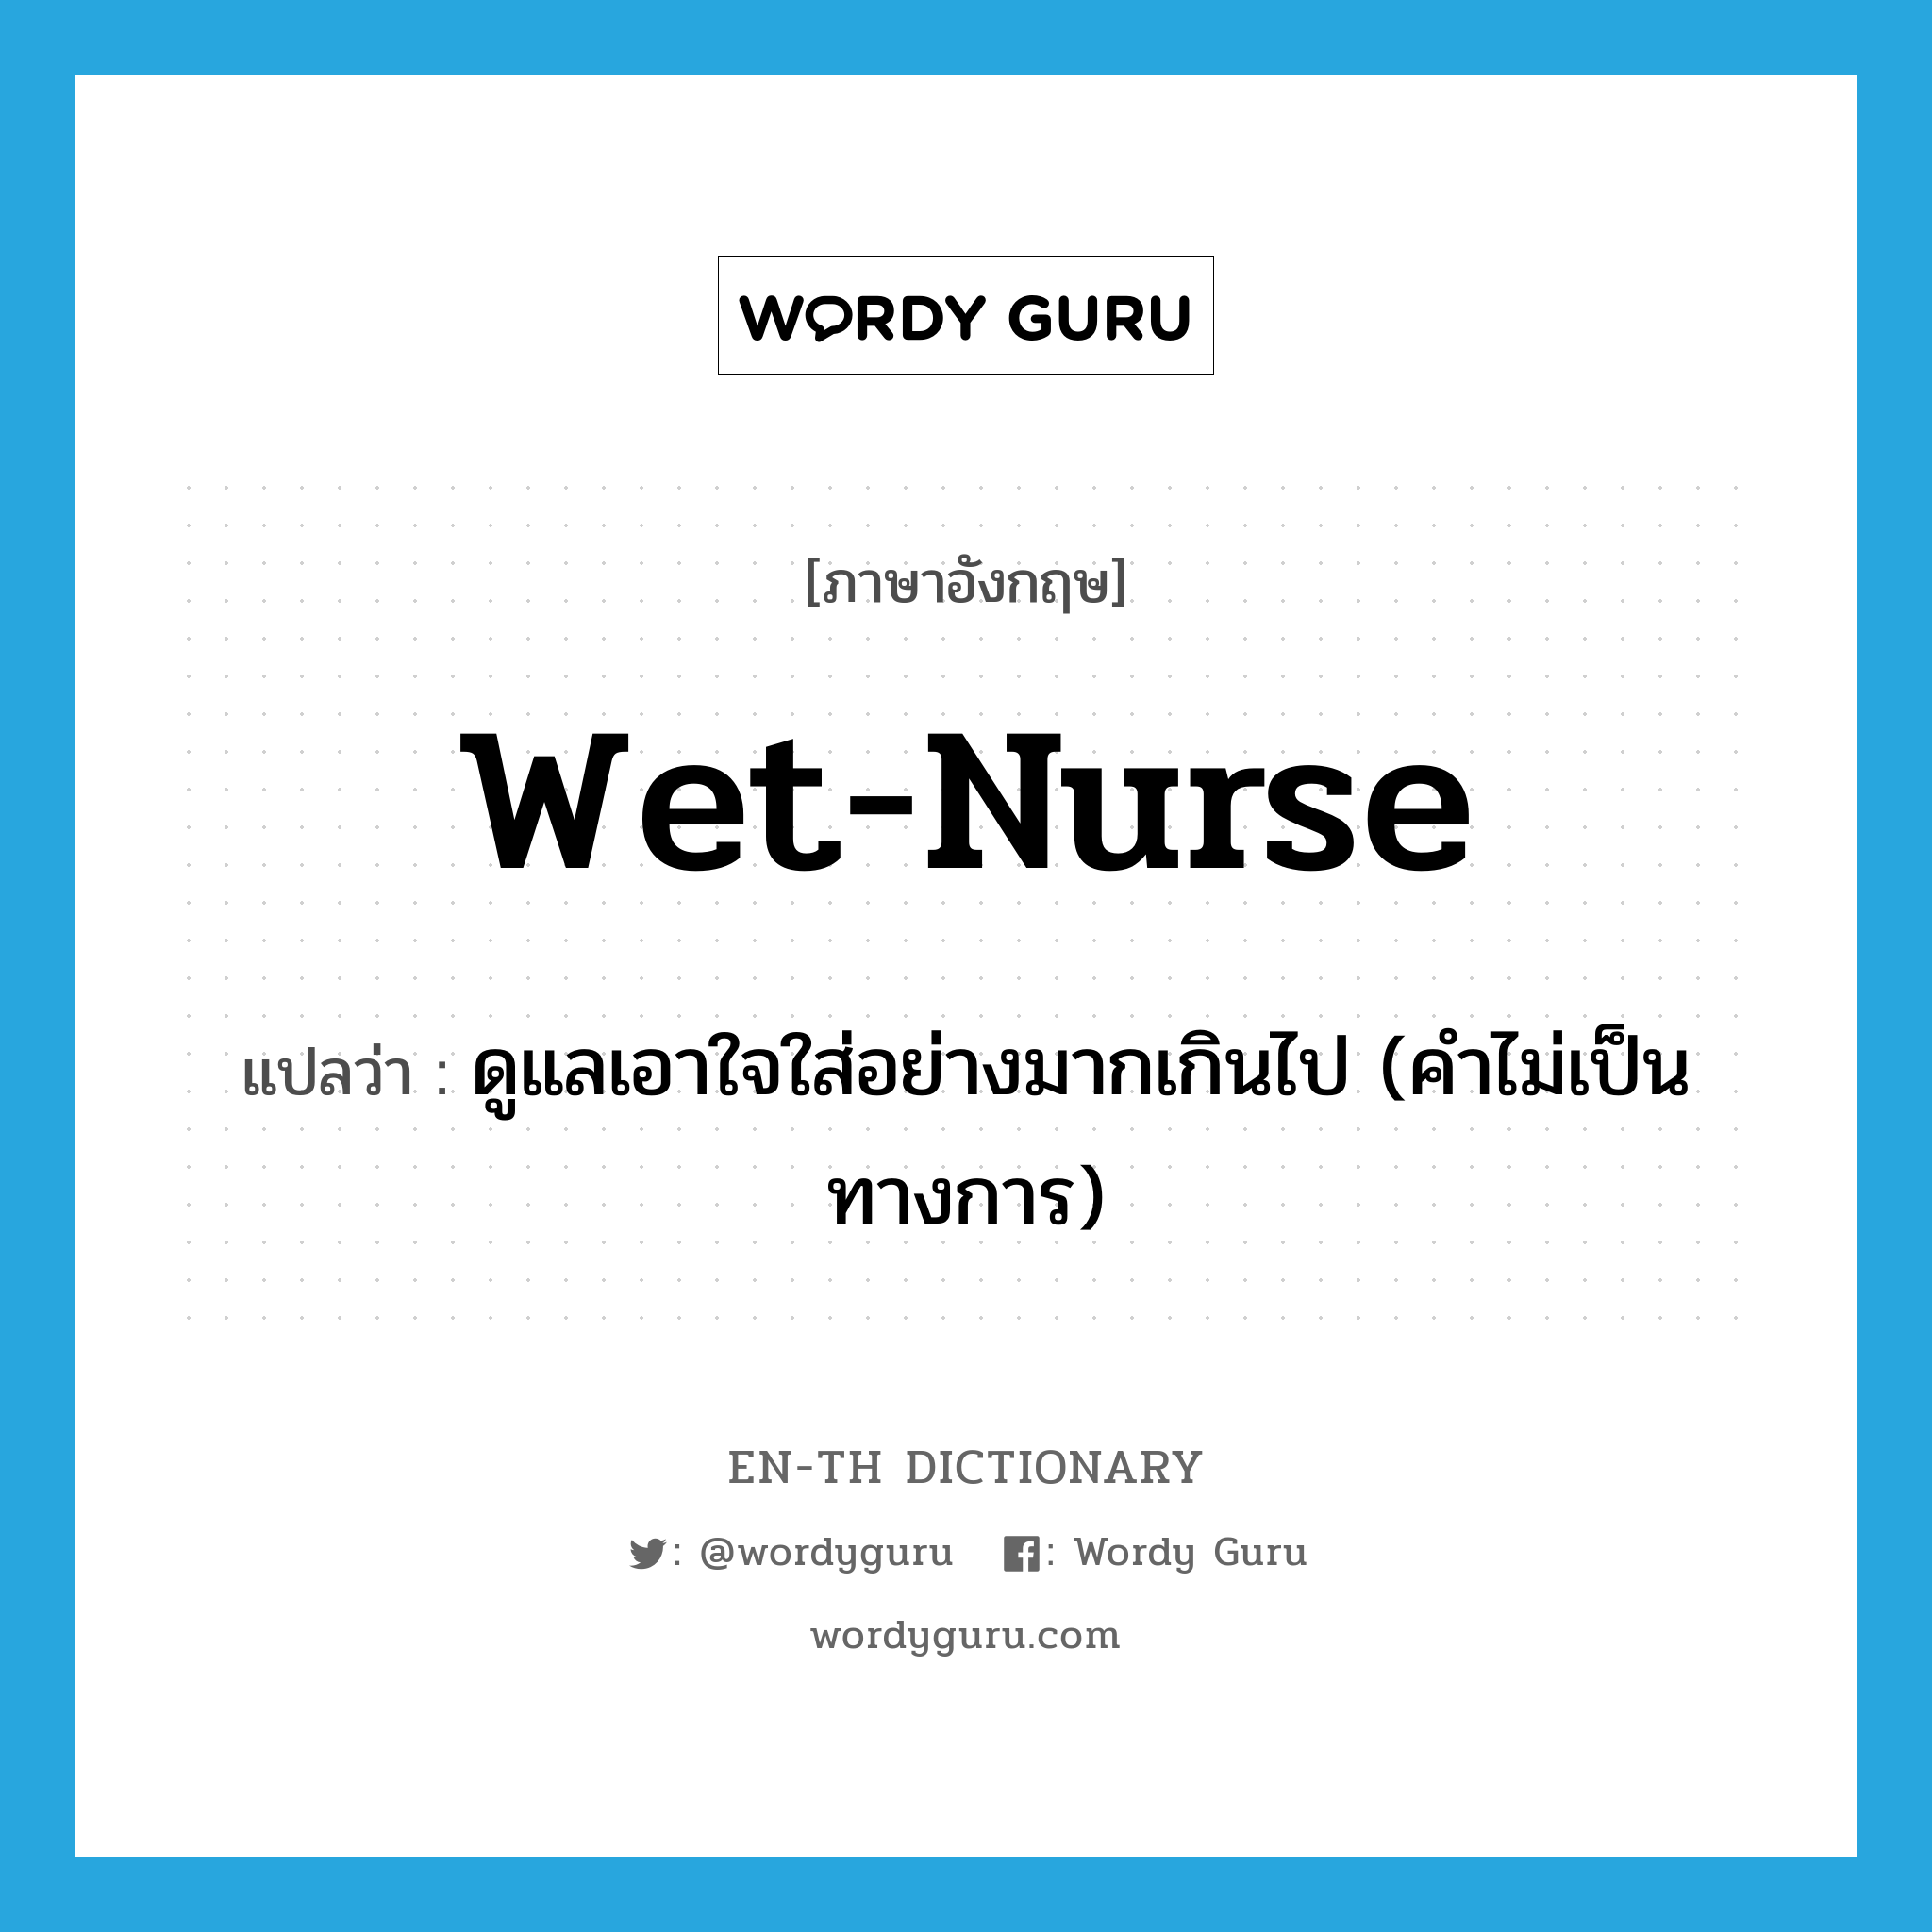 ดูแลเอาใจใส่อย่างมากเกินไป (คำไม่เป็นทางการ) ภาษาอังกฤษ?, คำศัพท์ภาษาอังกฤษ ดูแลเอาใจใส่อย่างมากเกินไป (คำไม่เป็นทางการ) แปลว่า wet-nurse ประเภท VT หมวด VT